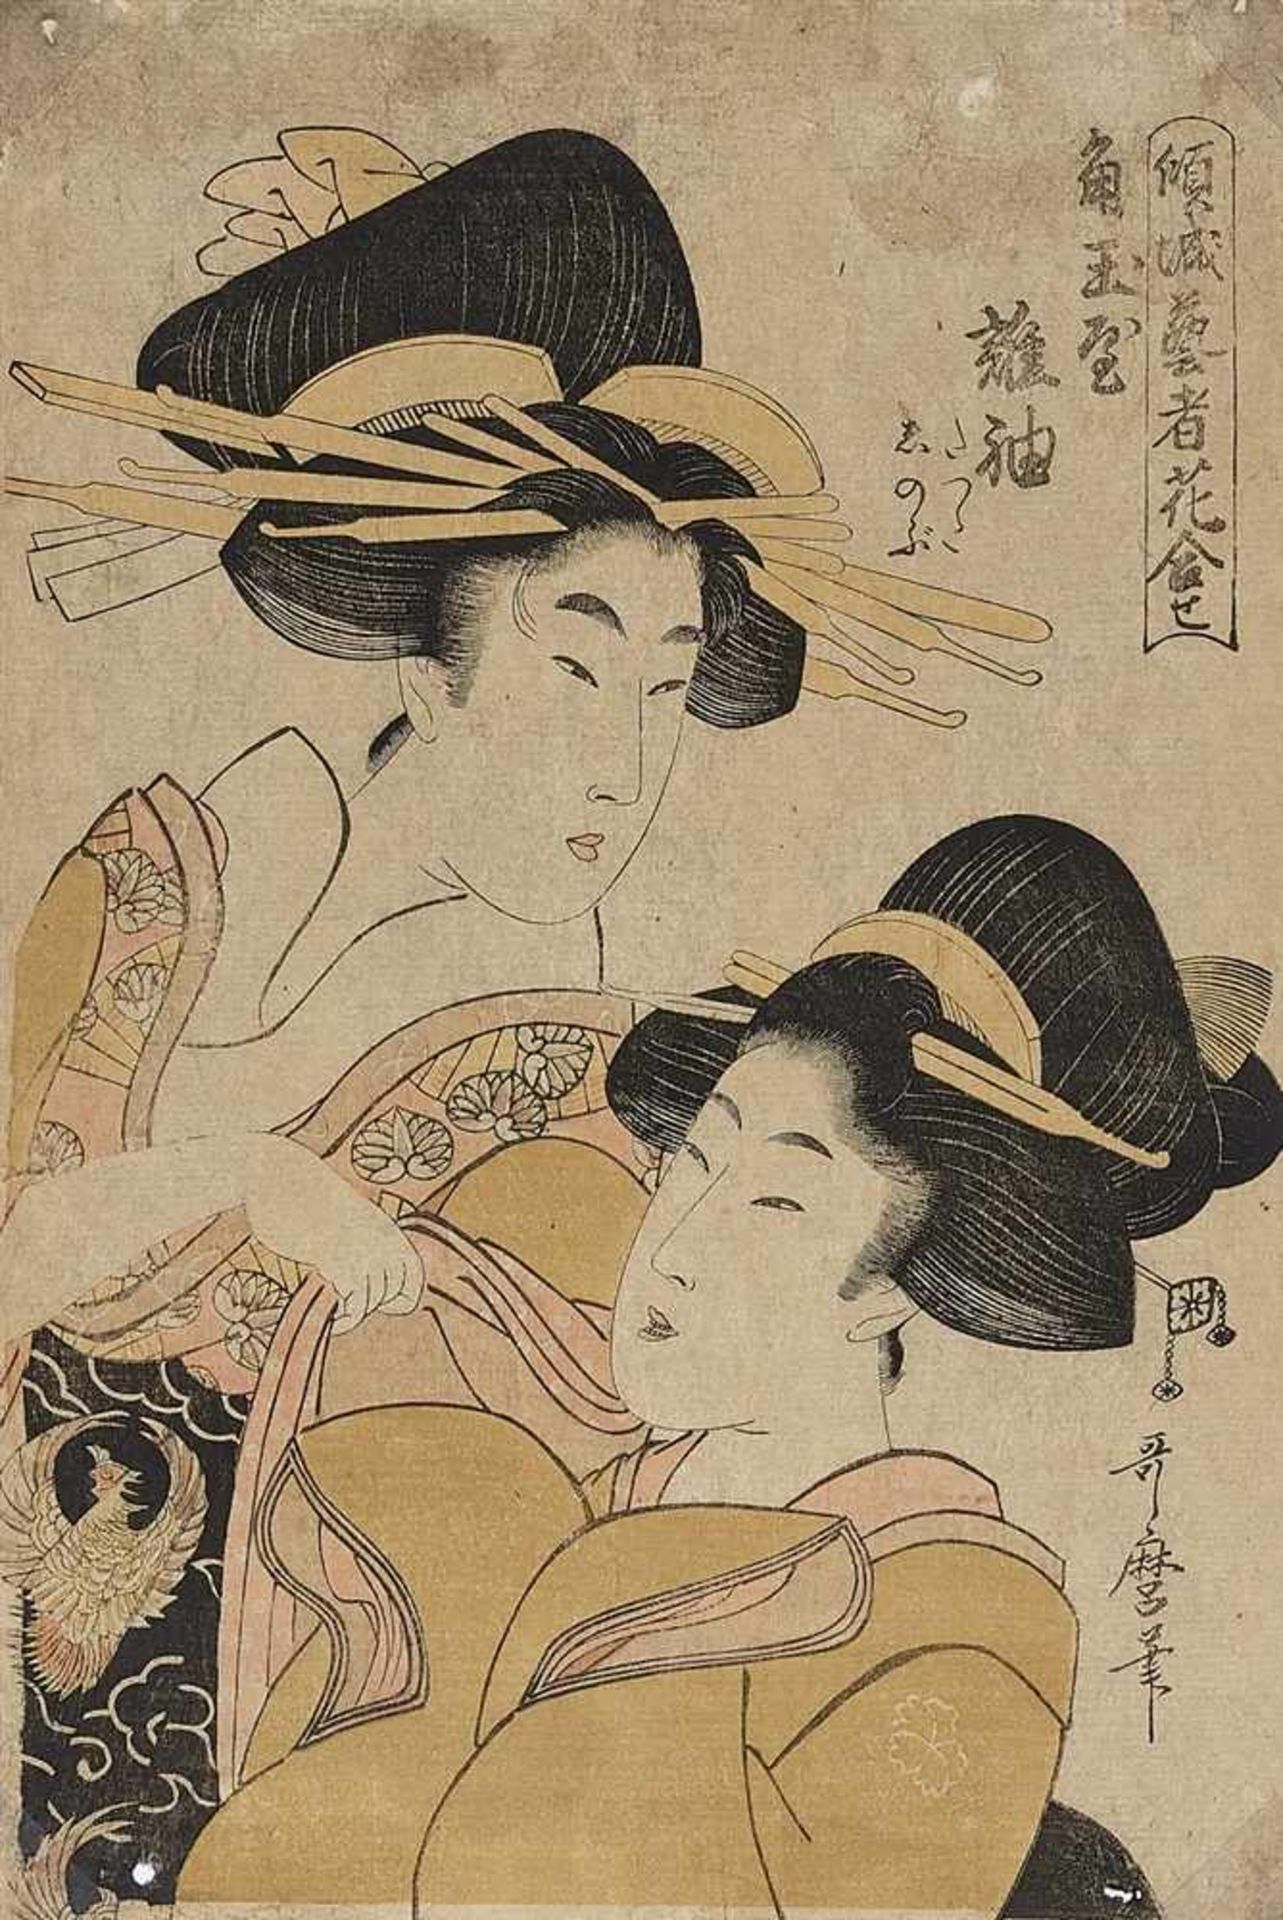 Kitagawa Utamaro (1754-1806), Hosoda Eishi (1756-1829) and Katsukawa Shun’ei (1762-1819)